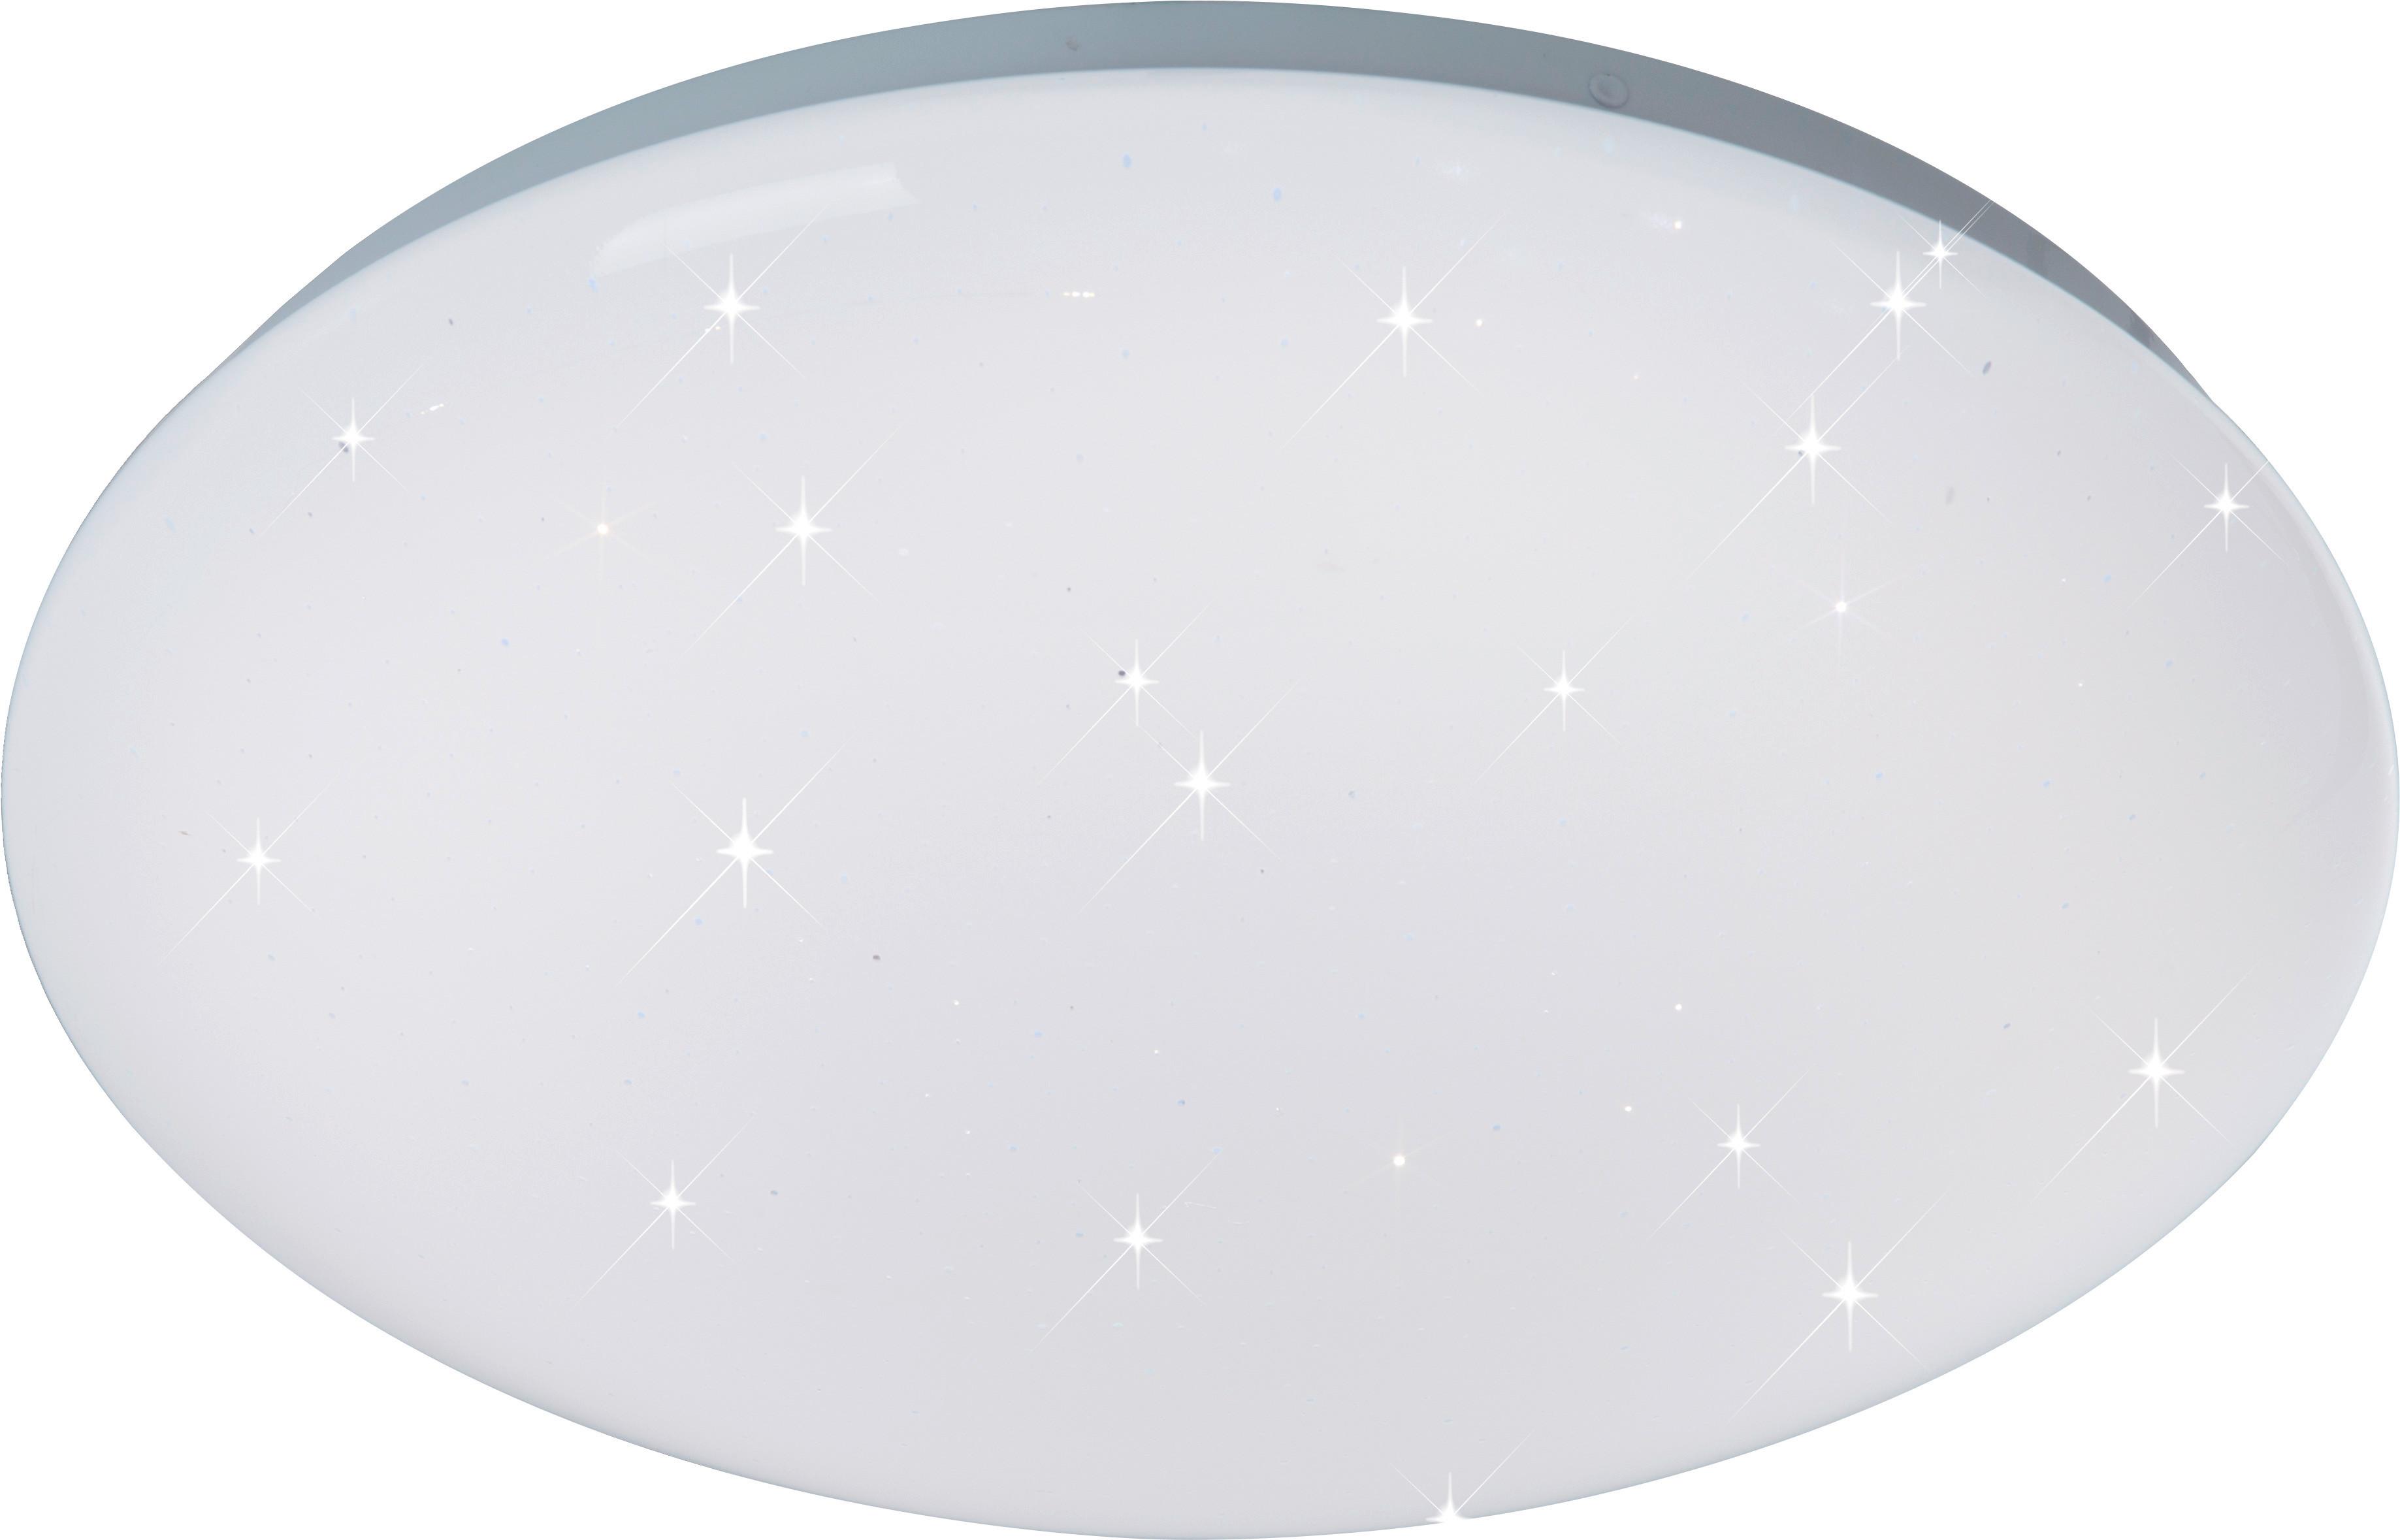 LED-Deckenleuchte Starlight max. 15 Watt - Weiß, KONVENTIONELL, Kunststoff/Metall (29/9,5cm) - Modern Living